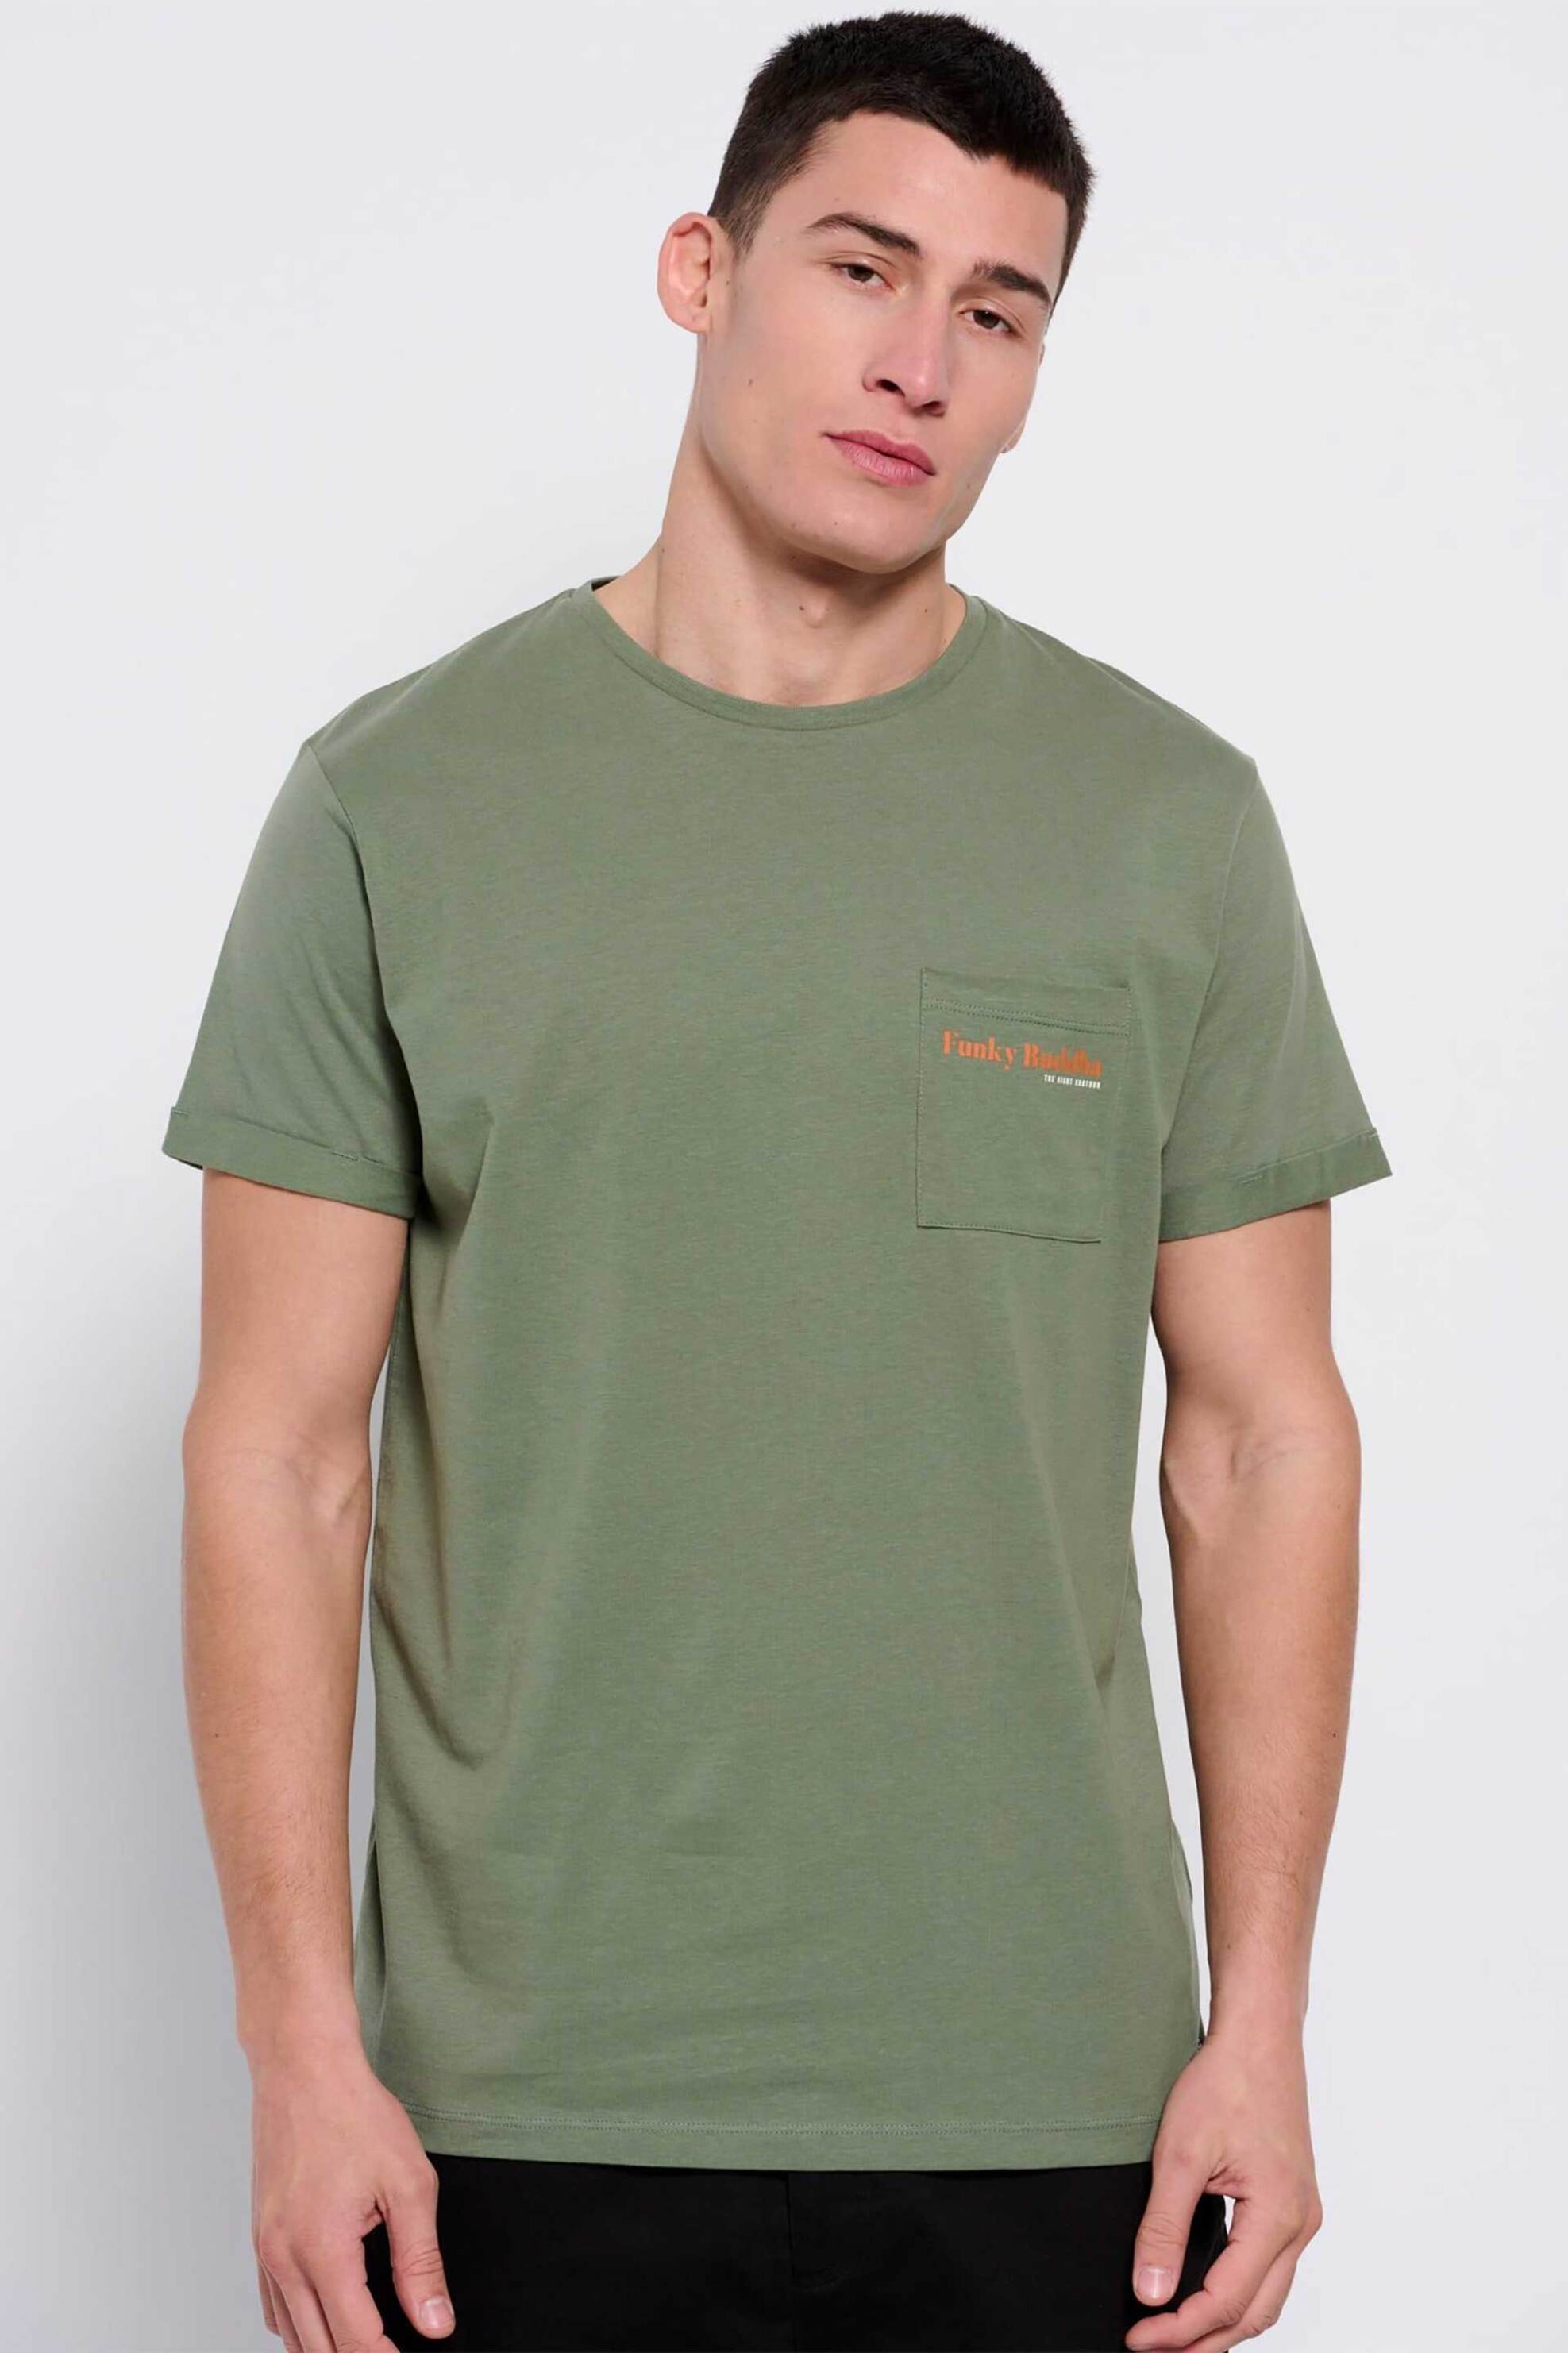 Ανδρική Μόδα > Ανδρικά Ρούχα > Ανδρικές Μπλούζες > Ανδρικά T-Shirts Funky Buddha ανδρικό βαμβακερό T-shirt μονόχρωμο με τσέπη slip και contrast logo print - FBM007-011-04 Χακί